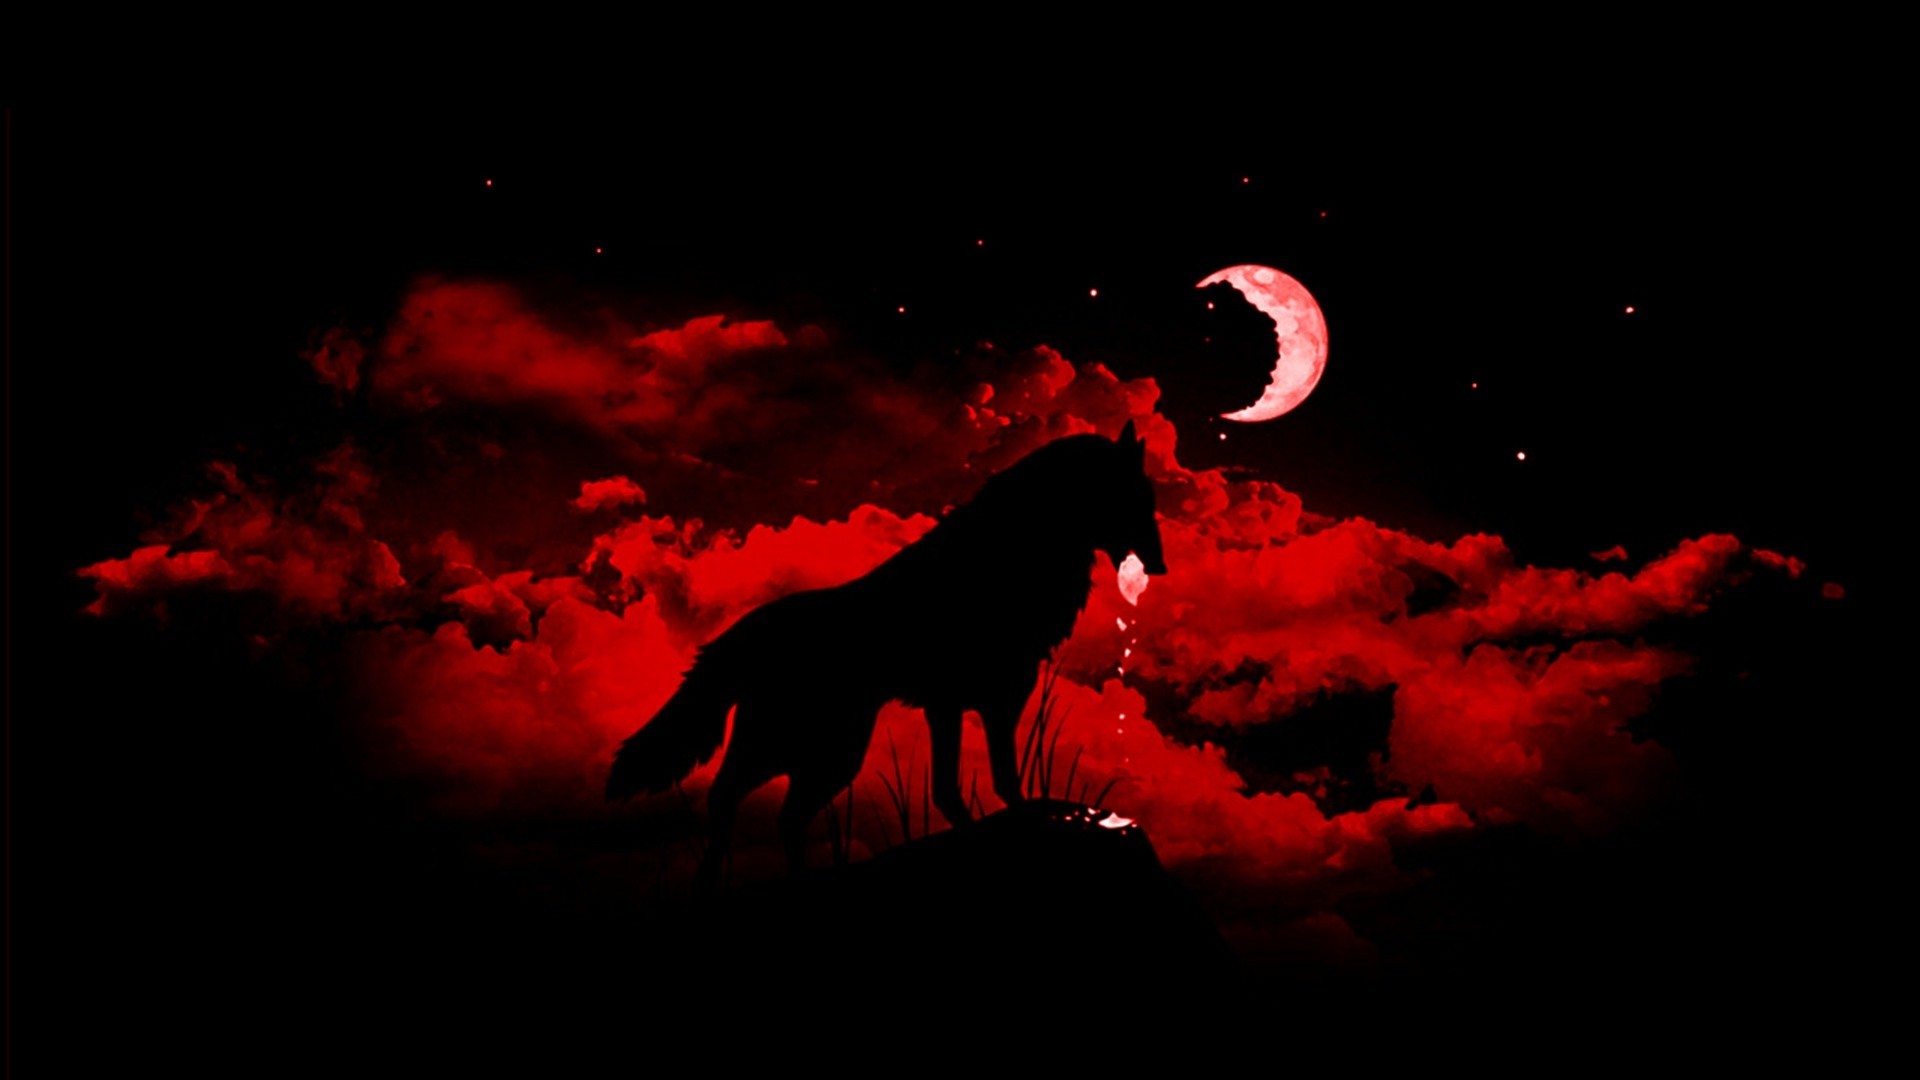 wolf fantasy art moon animals night Wallpaper